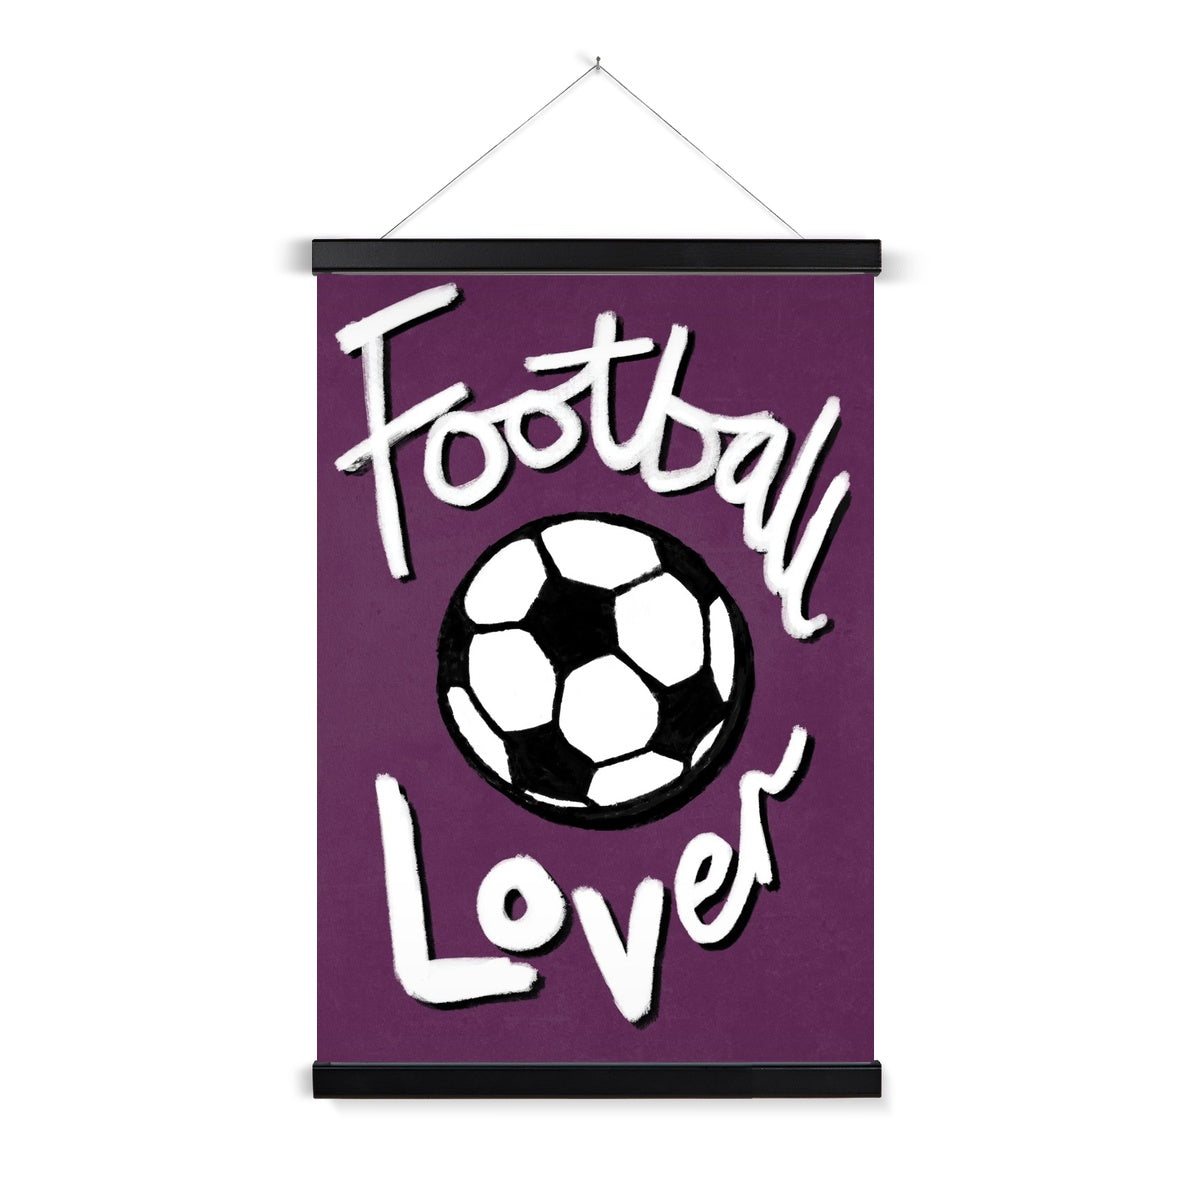 Football Lover Print - Plum, Black, White Fine Art Print with Hanger